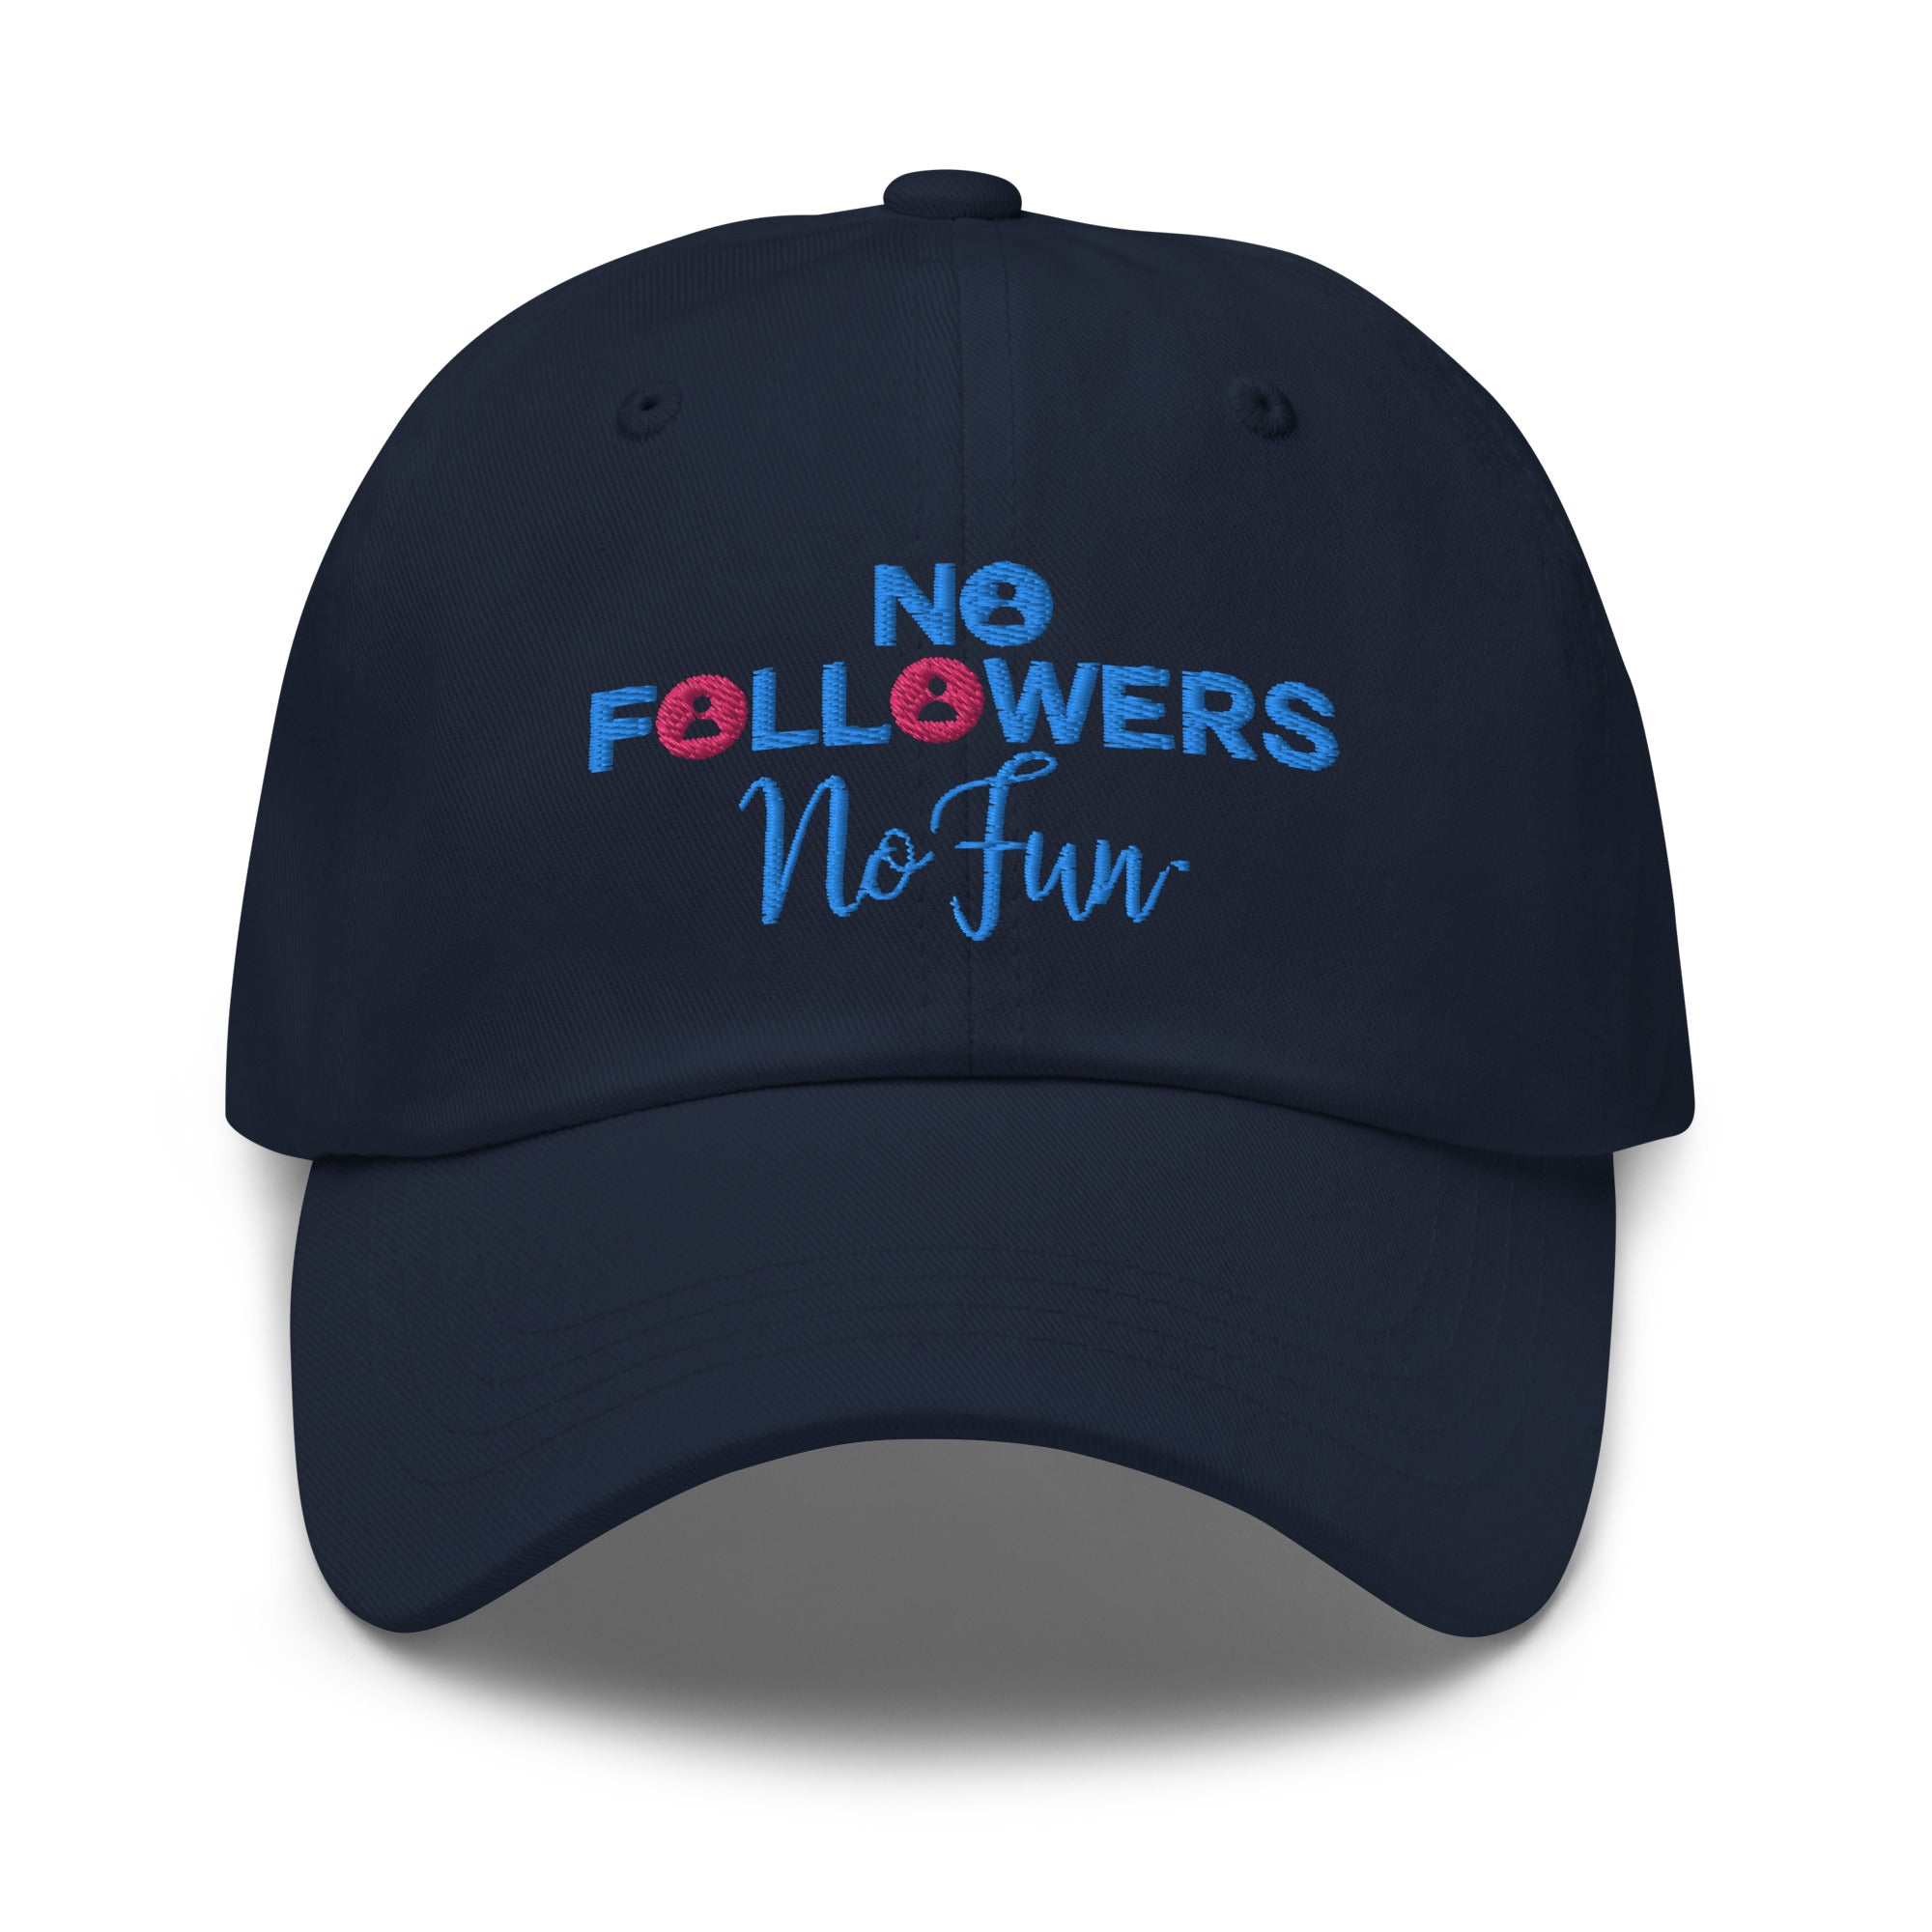 No Followers No Fun, Cap, Hat